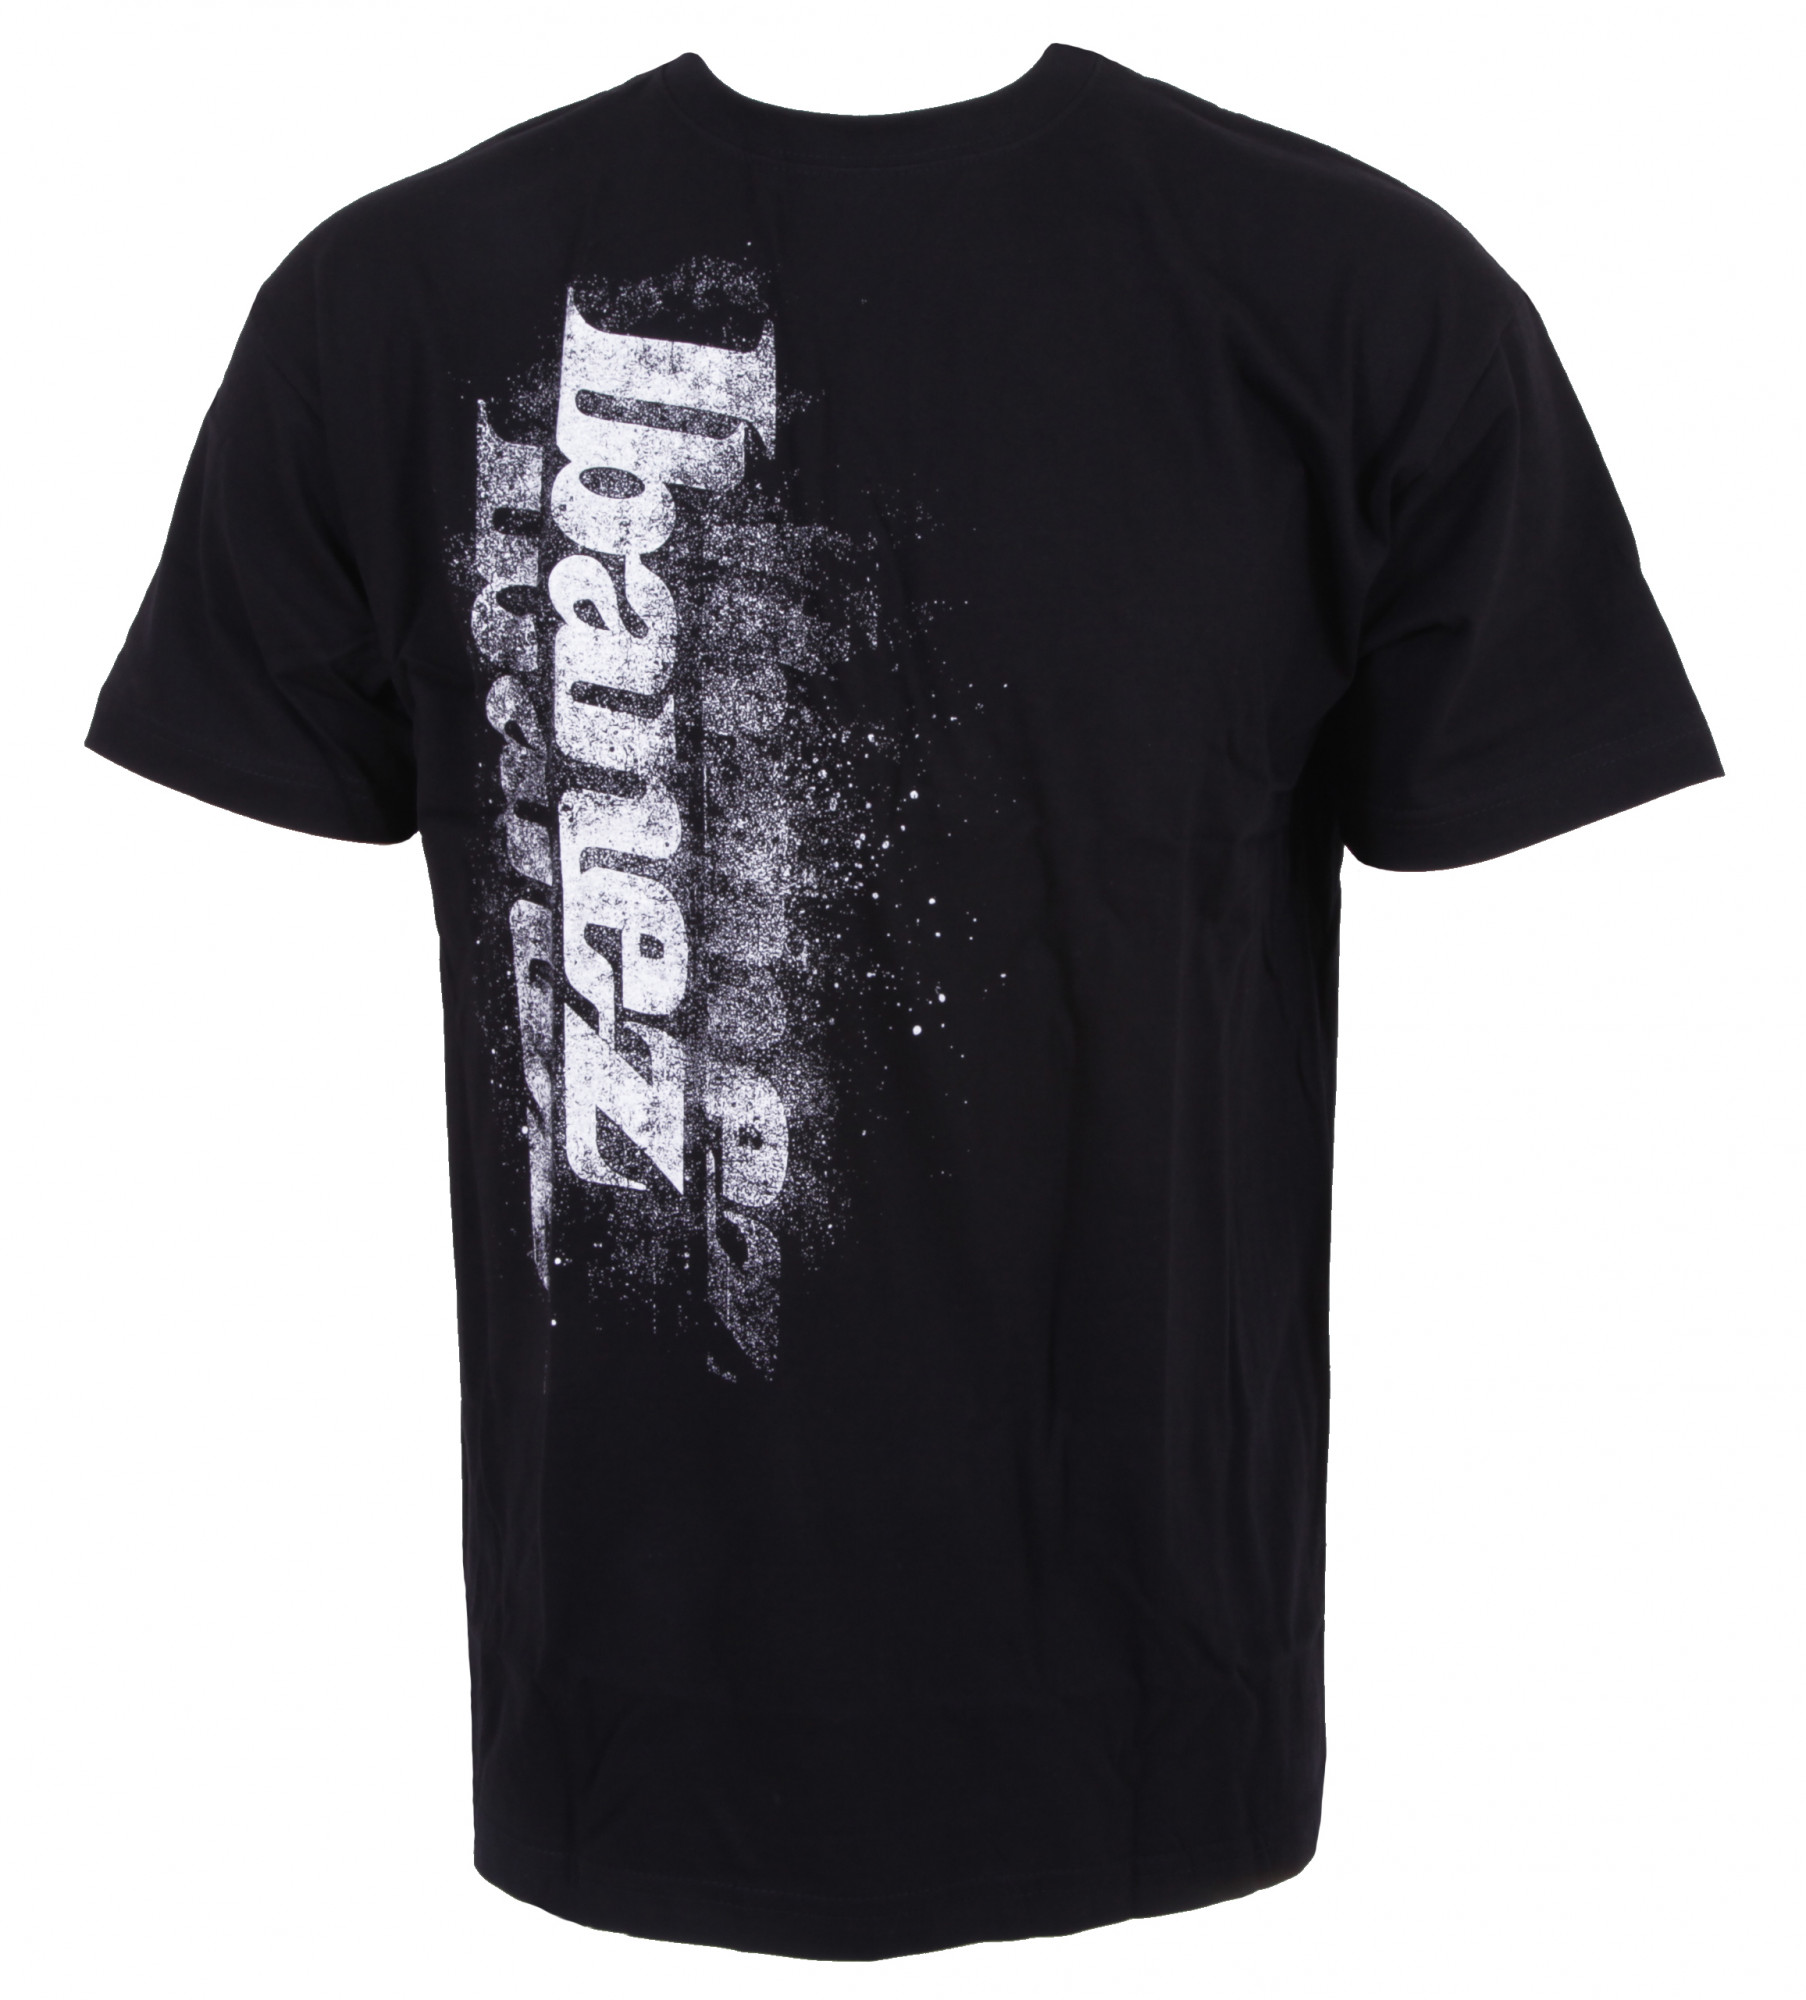 IBANEZ T-Shirt in schwarz mit weißem "Spray" Logo Frontpri